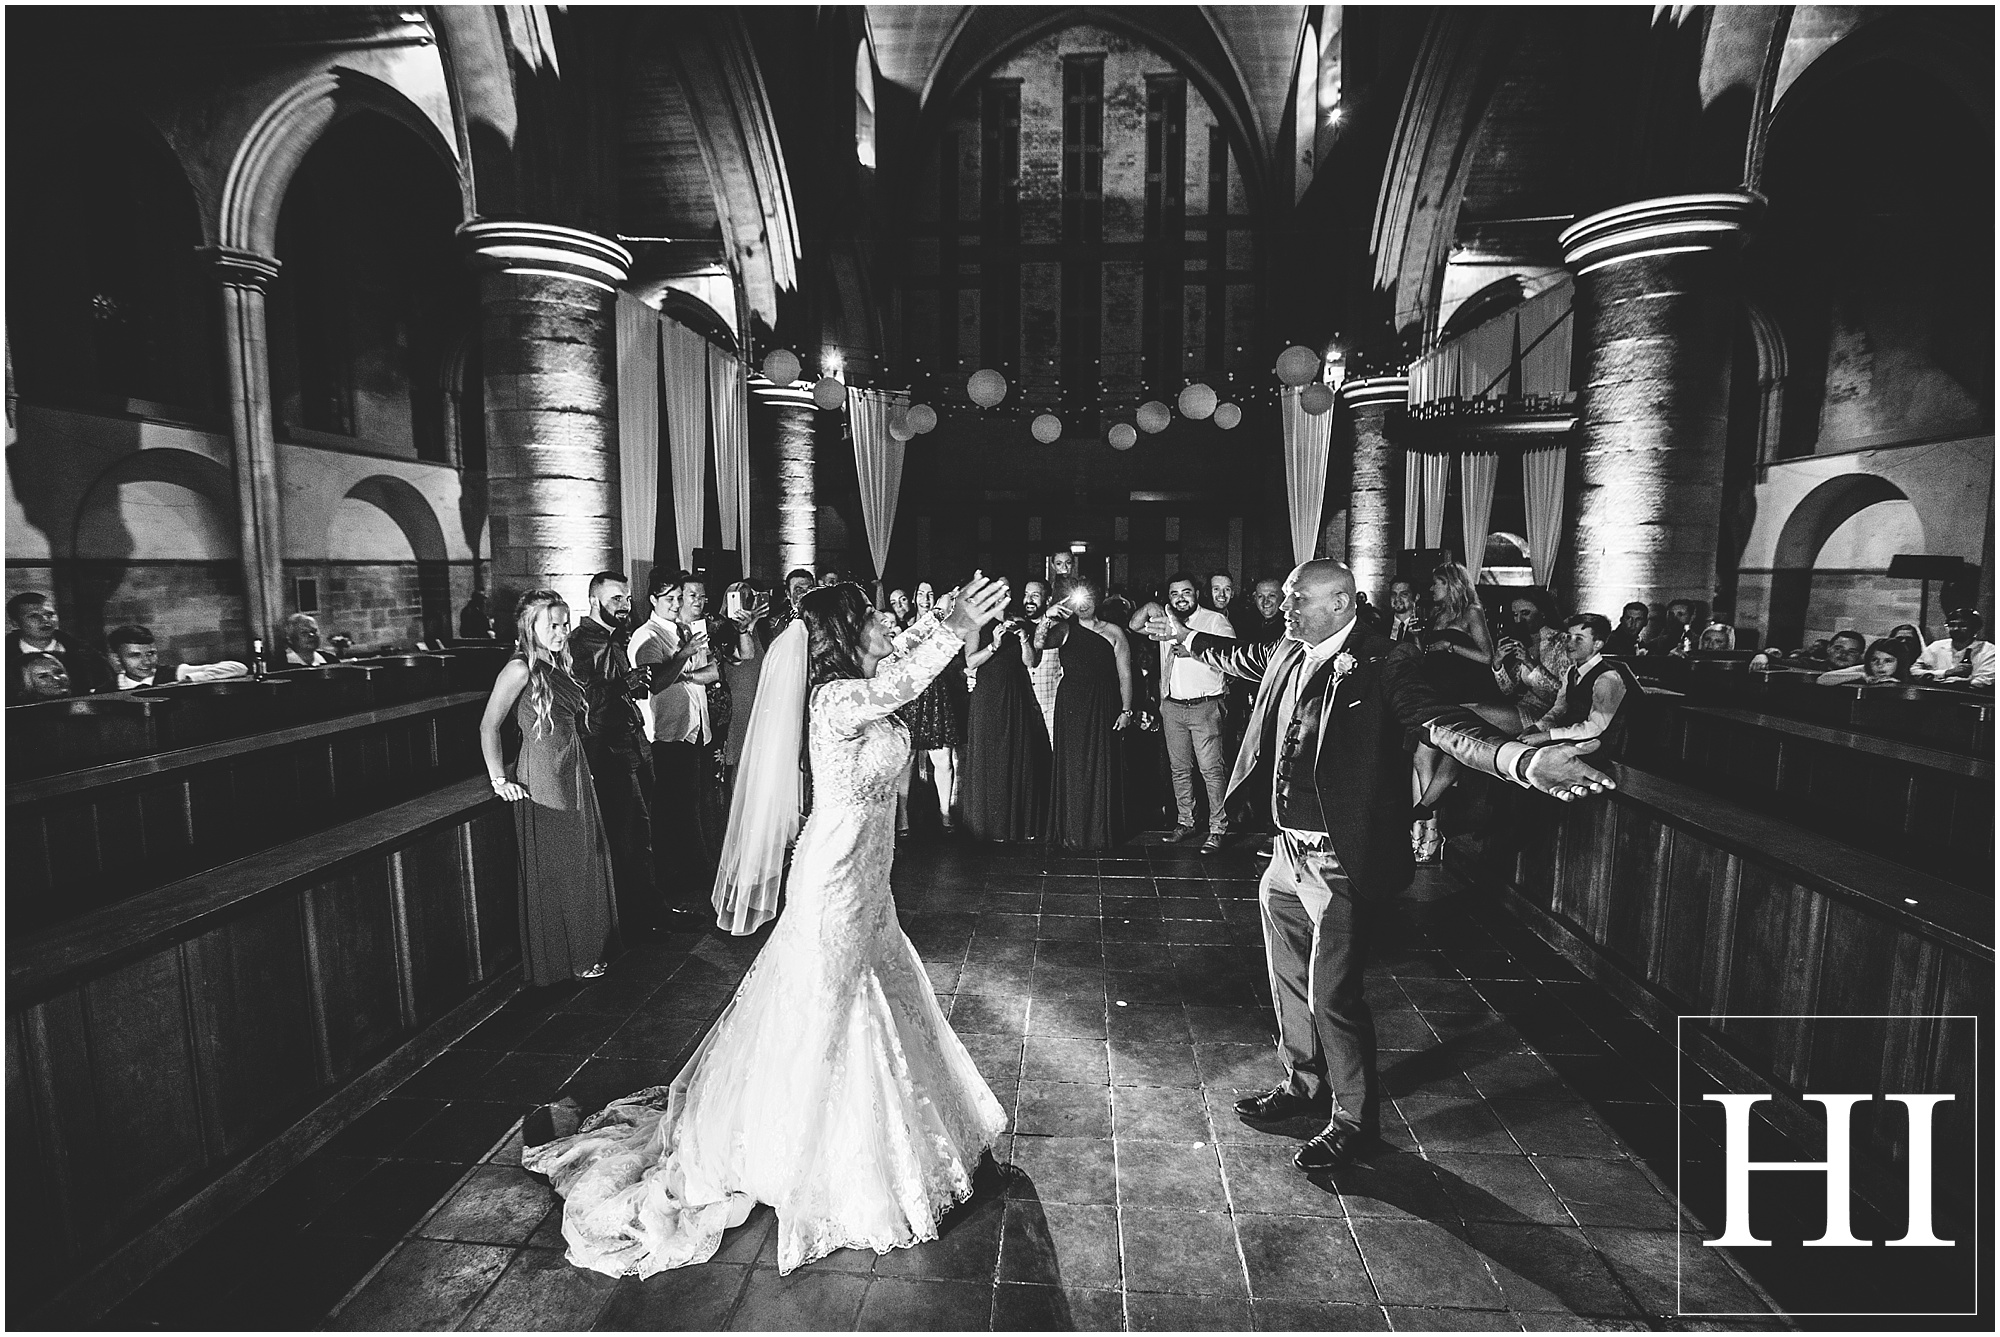 Left Bank Wedding Photography Leeds Hamish Irvine Photographer Lisa and Stephen's Wedding